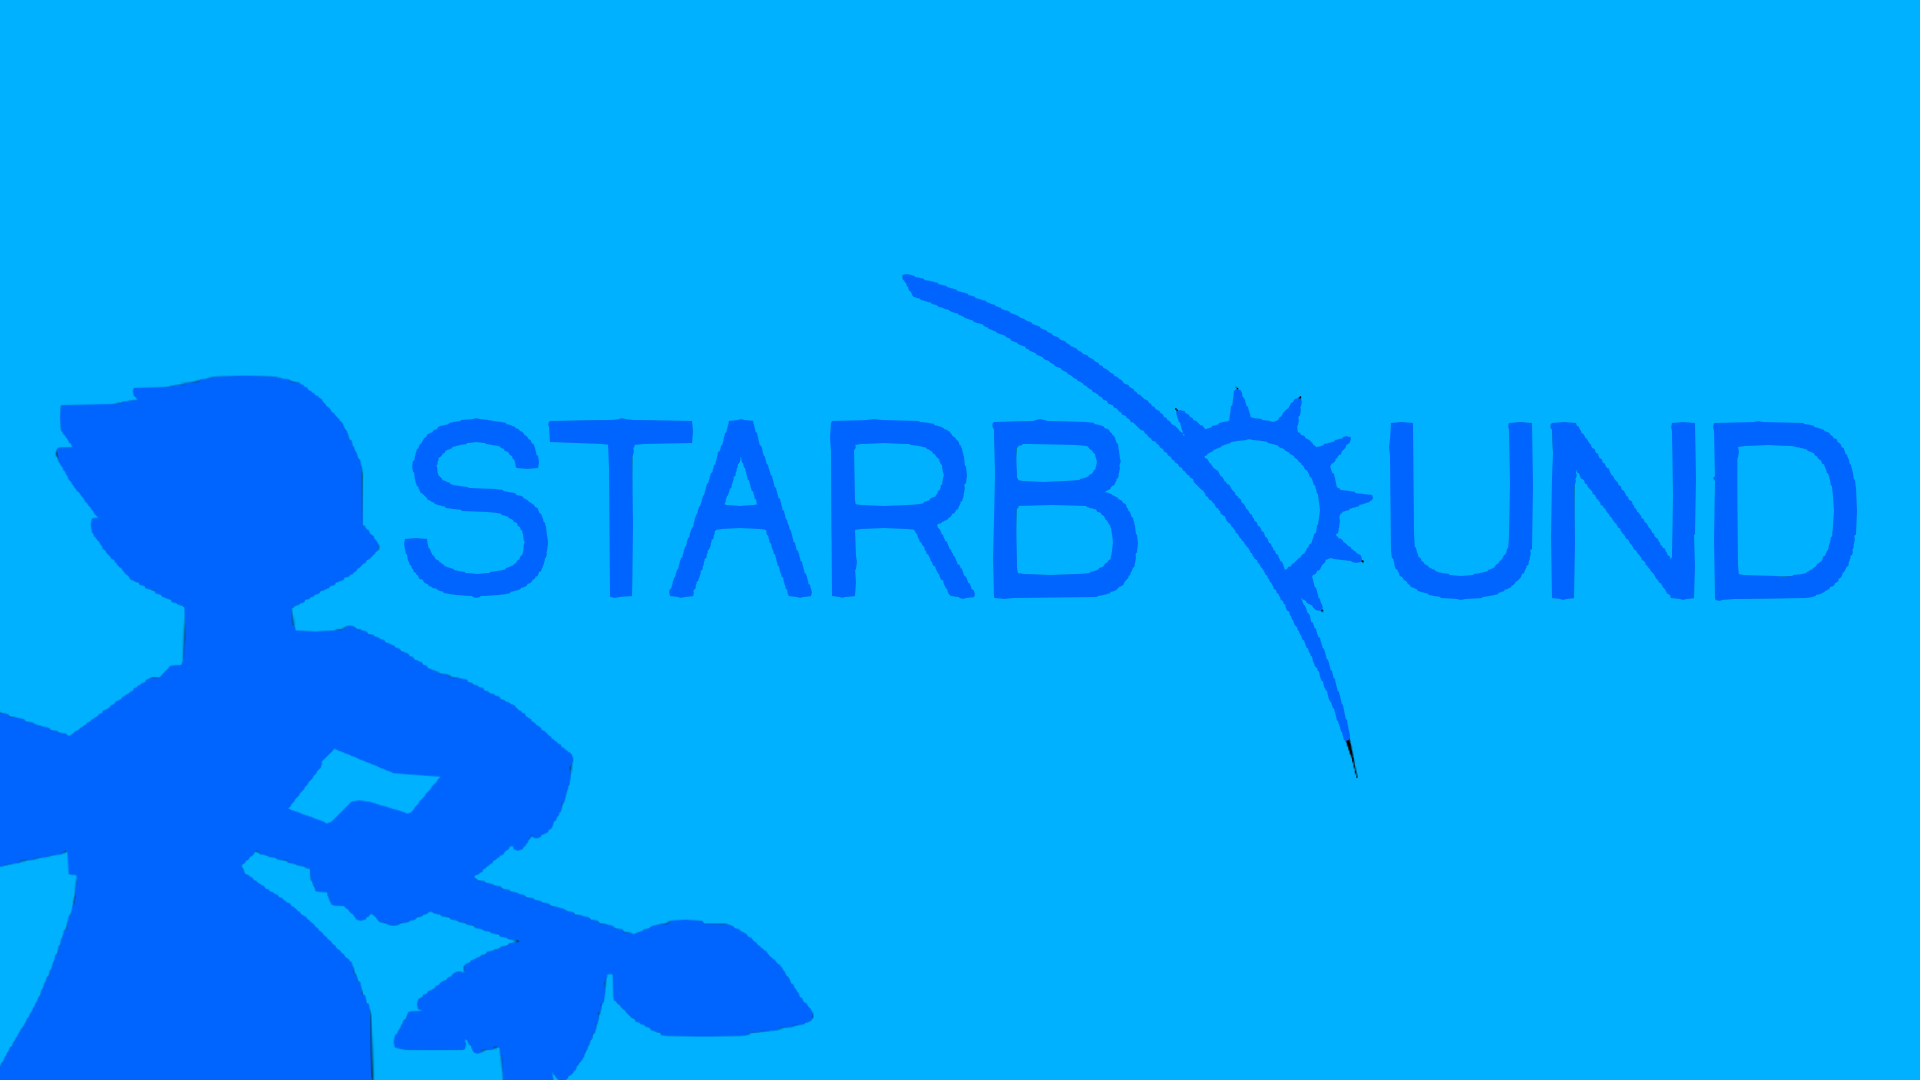 Starbound Minimalism Blue Background 1920x1080